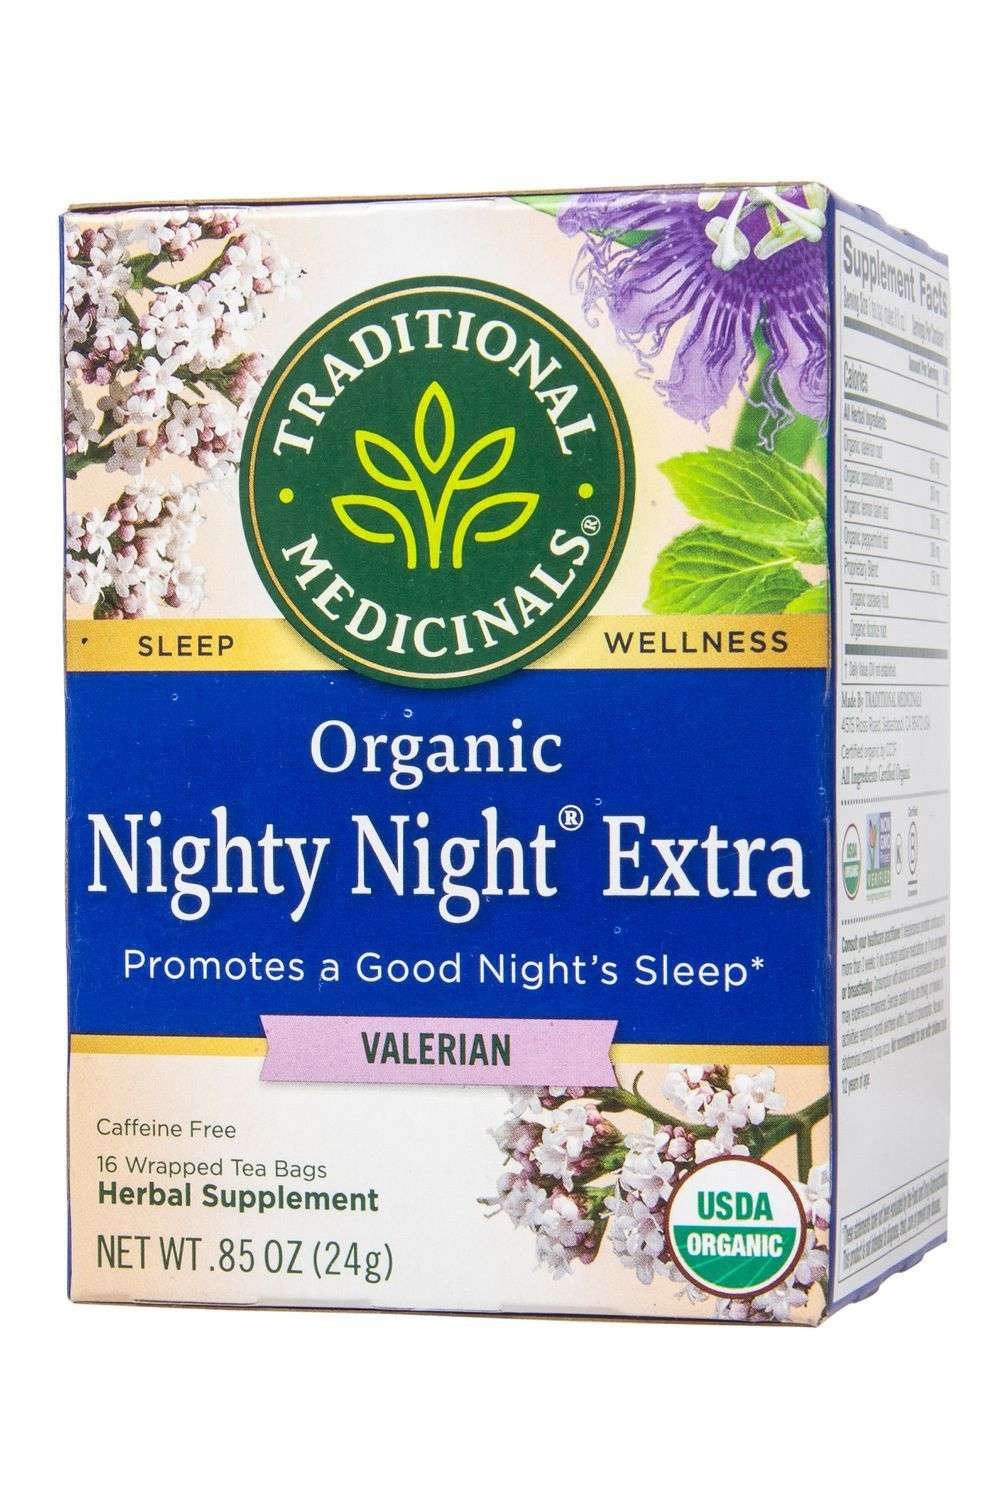 Traditional Medicinals Nighty Night Valerian Tea, Organic ...